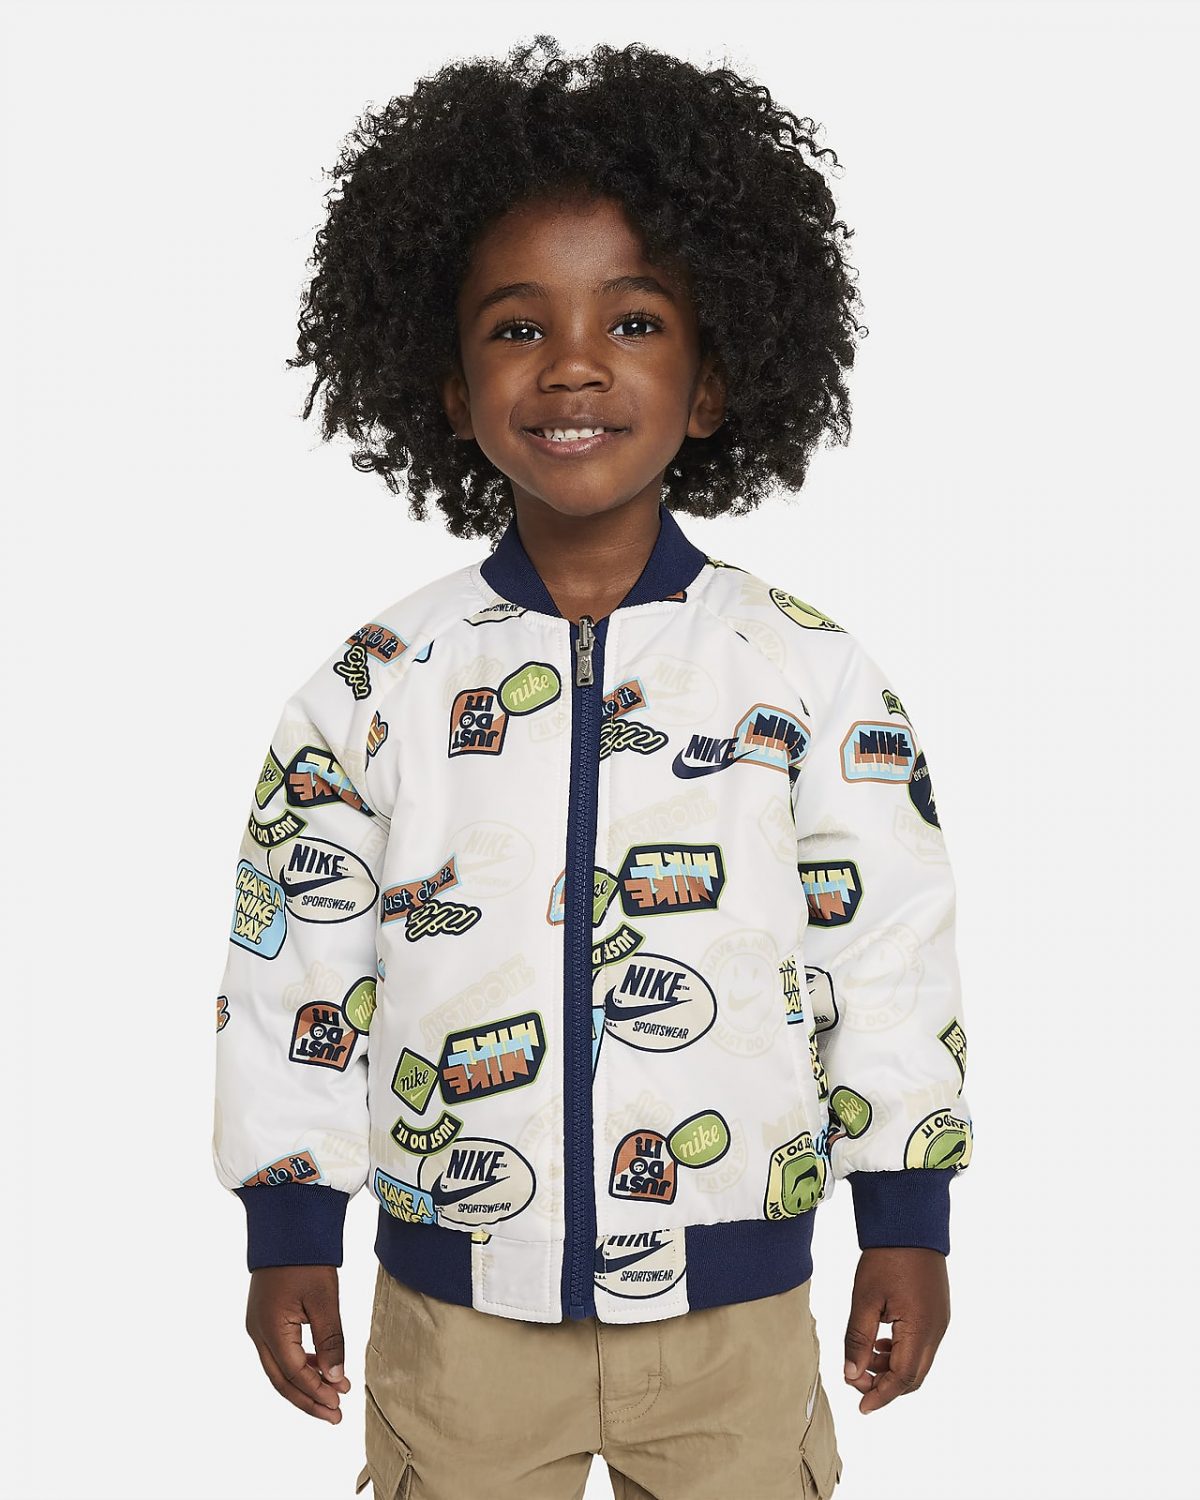 Детская куртка Nike фото